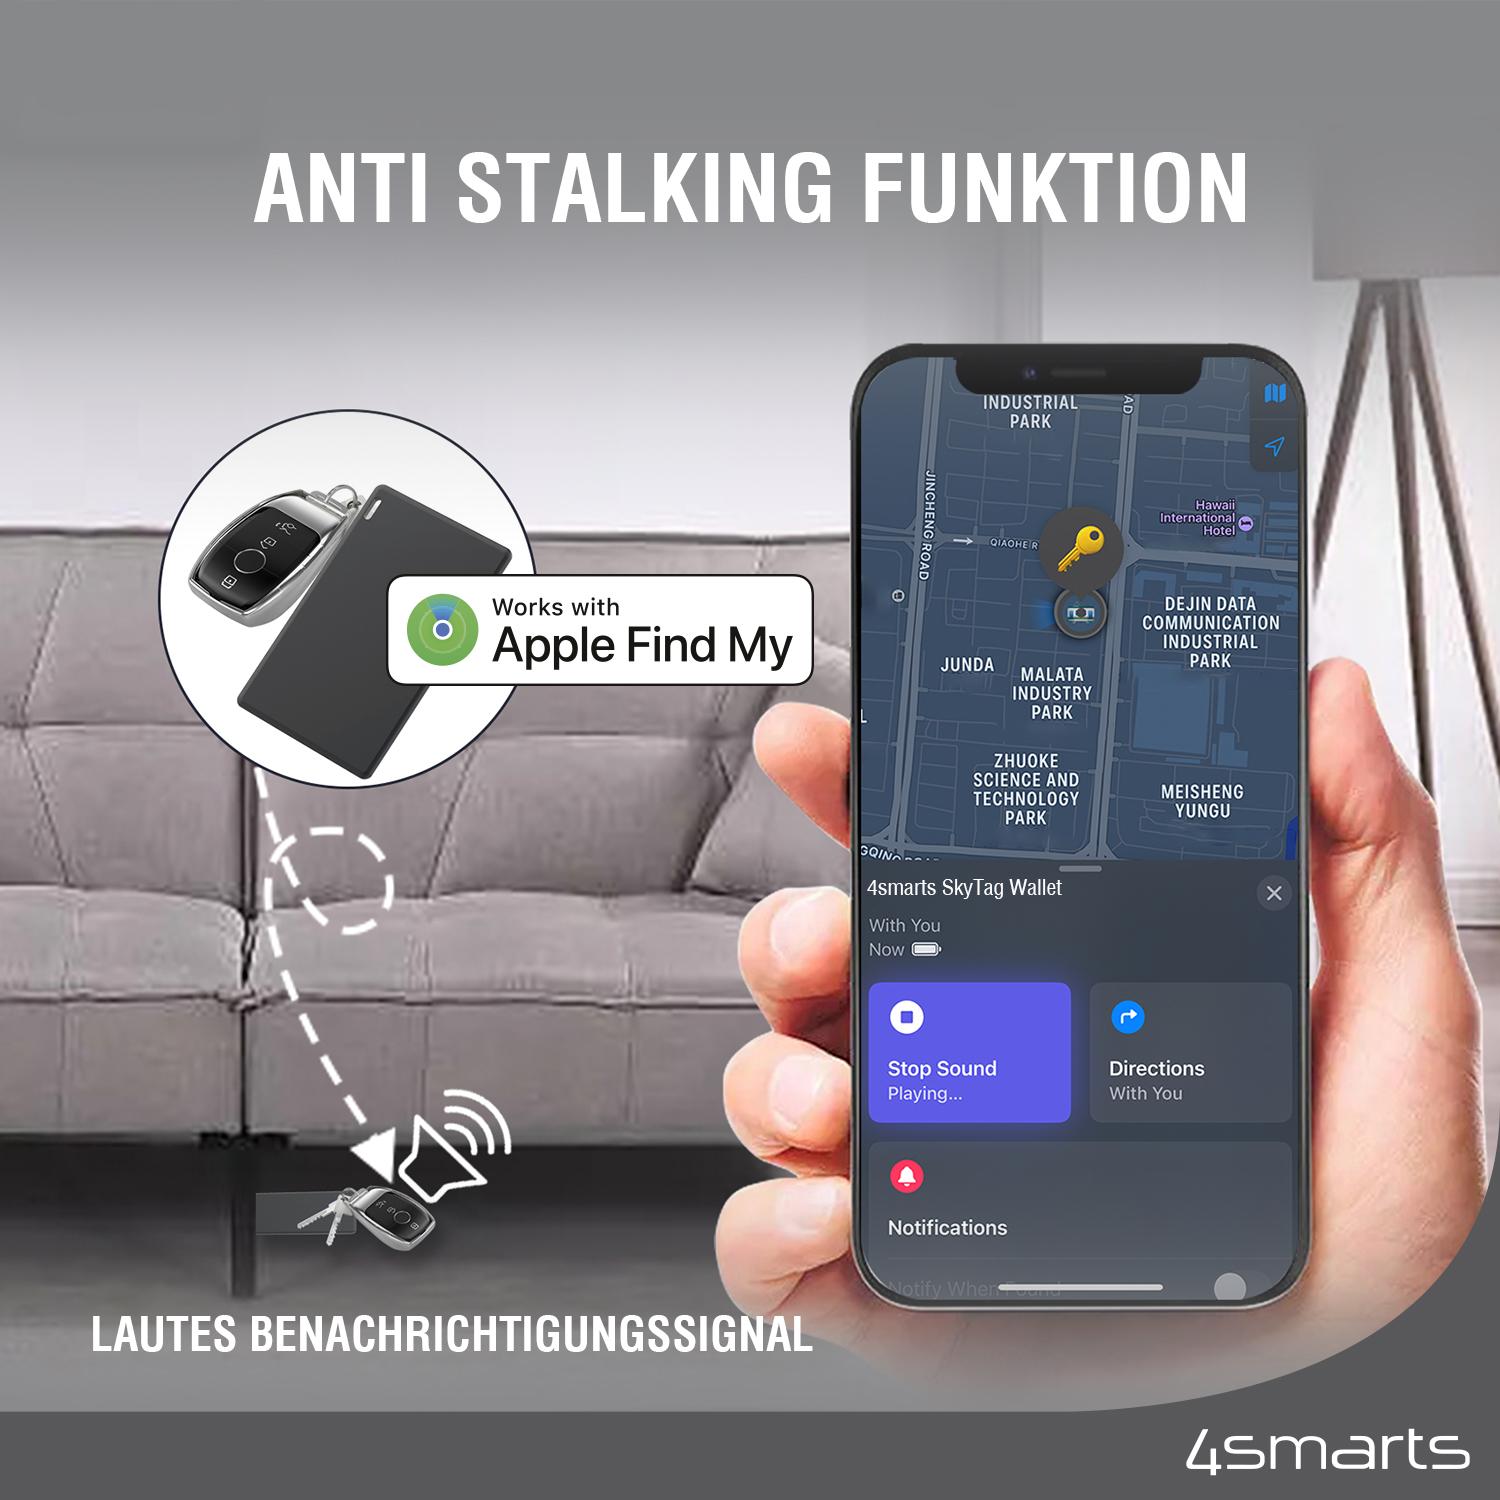 Mit einem lauten Signalton von bis zu 80 db ist es unmöglich, deinen Geldbeutel zu überhören, und die Anti-Stalking-Funktion ist ebenfalls vorhanden.